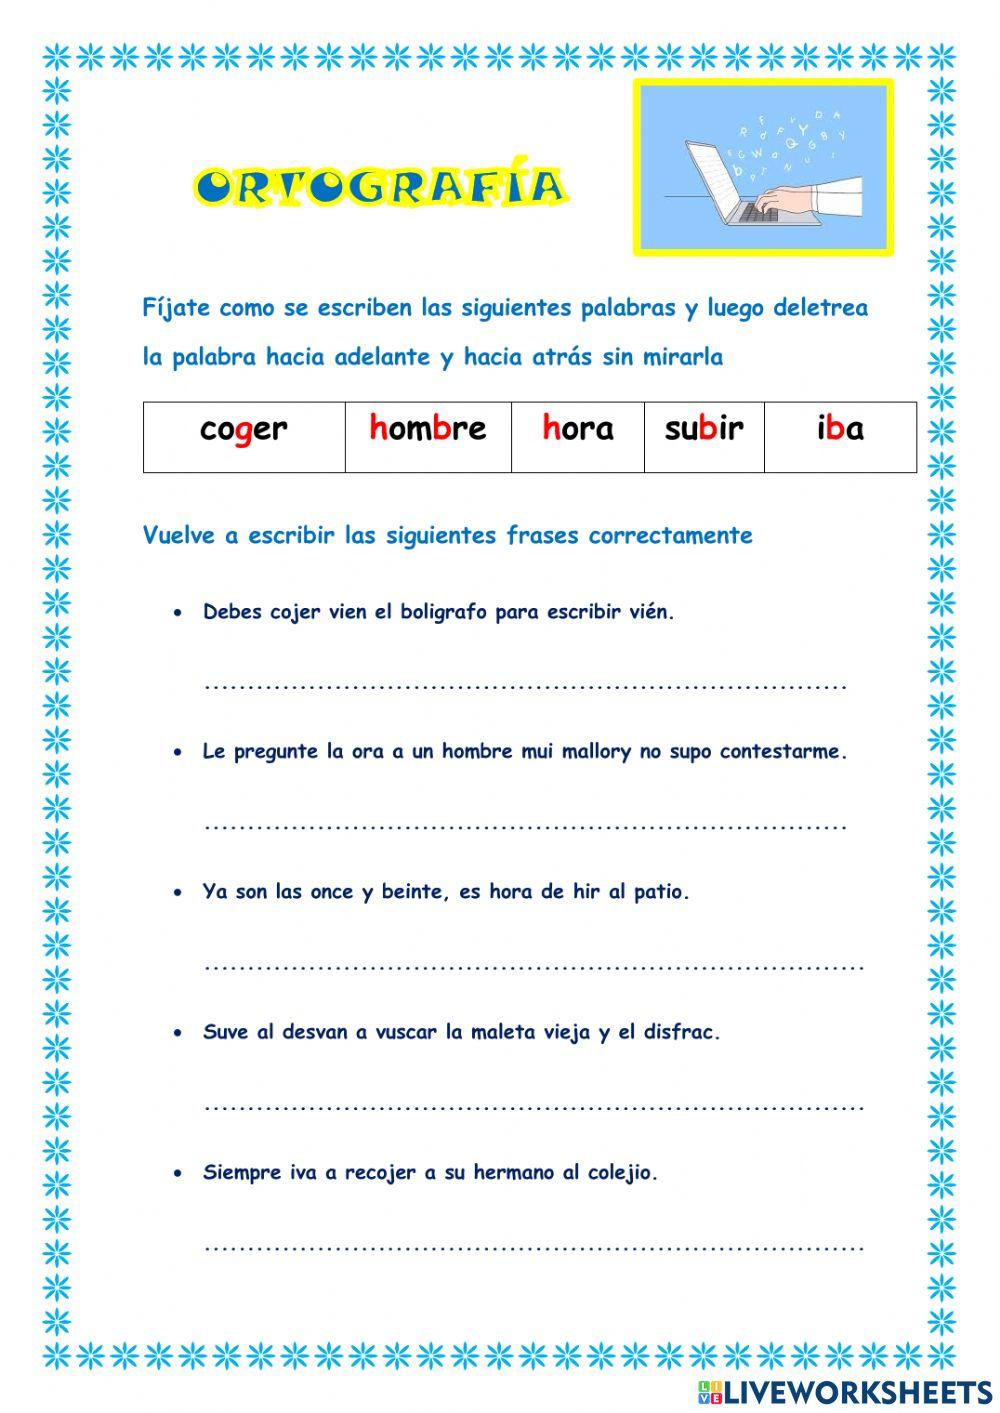 Ortografía online exercise for 5º de Primaria | Live Worksheets